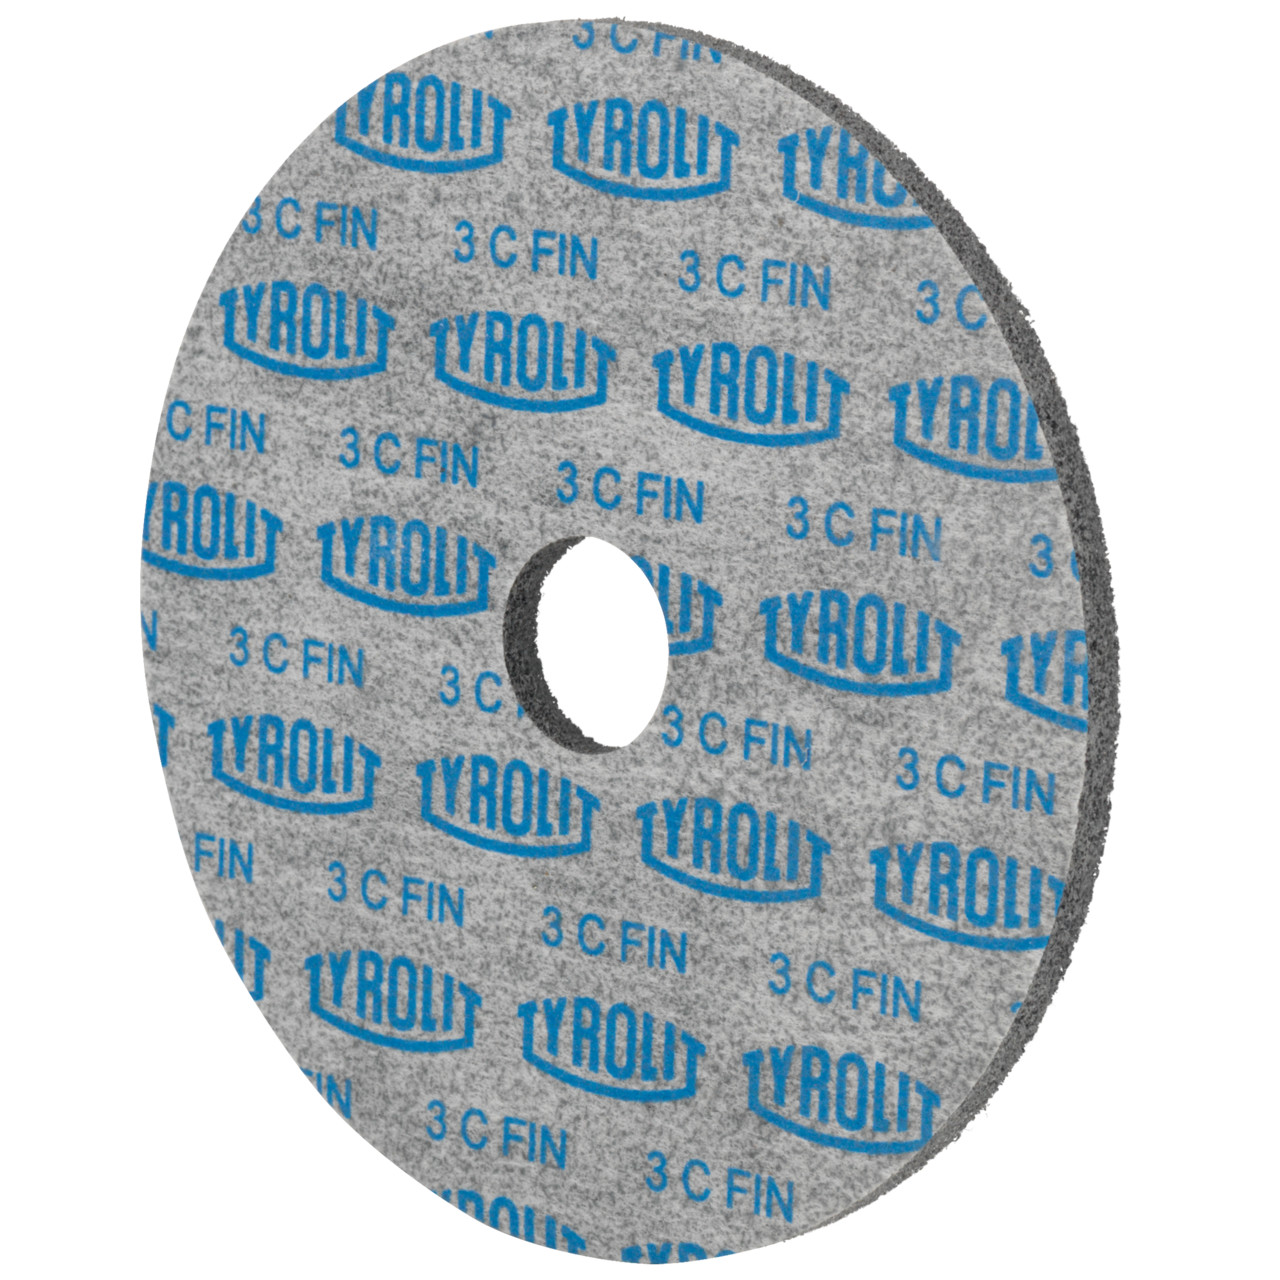 Tyrolit Discos compactos prensados DxDxH 127x6x22,2 De uso universal, 3 C FEIN, forma: 1, Art. 34257307